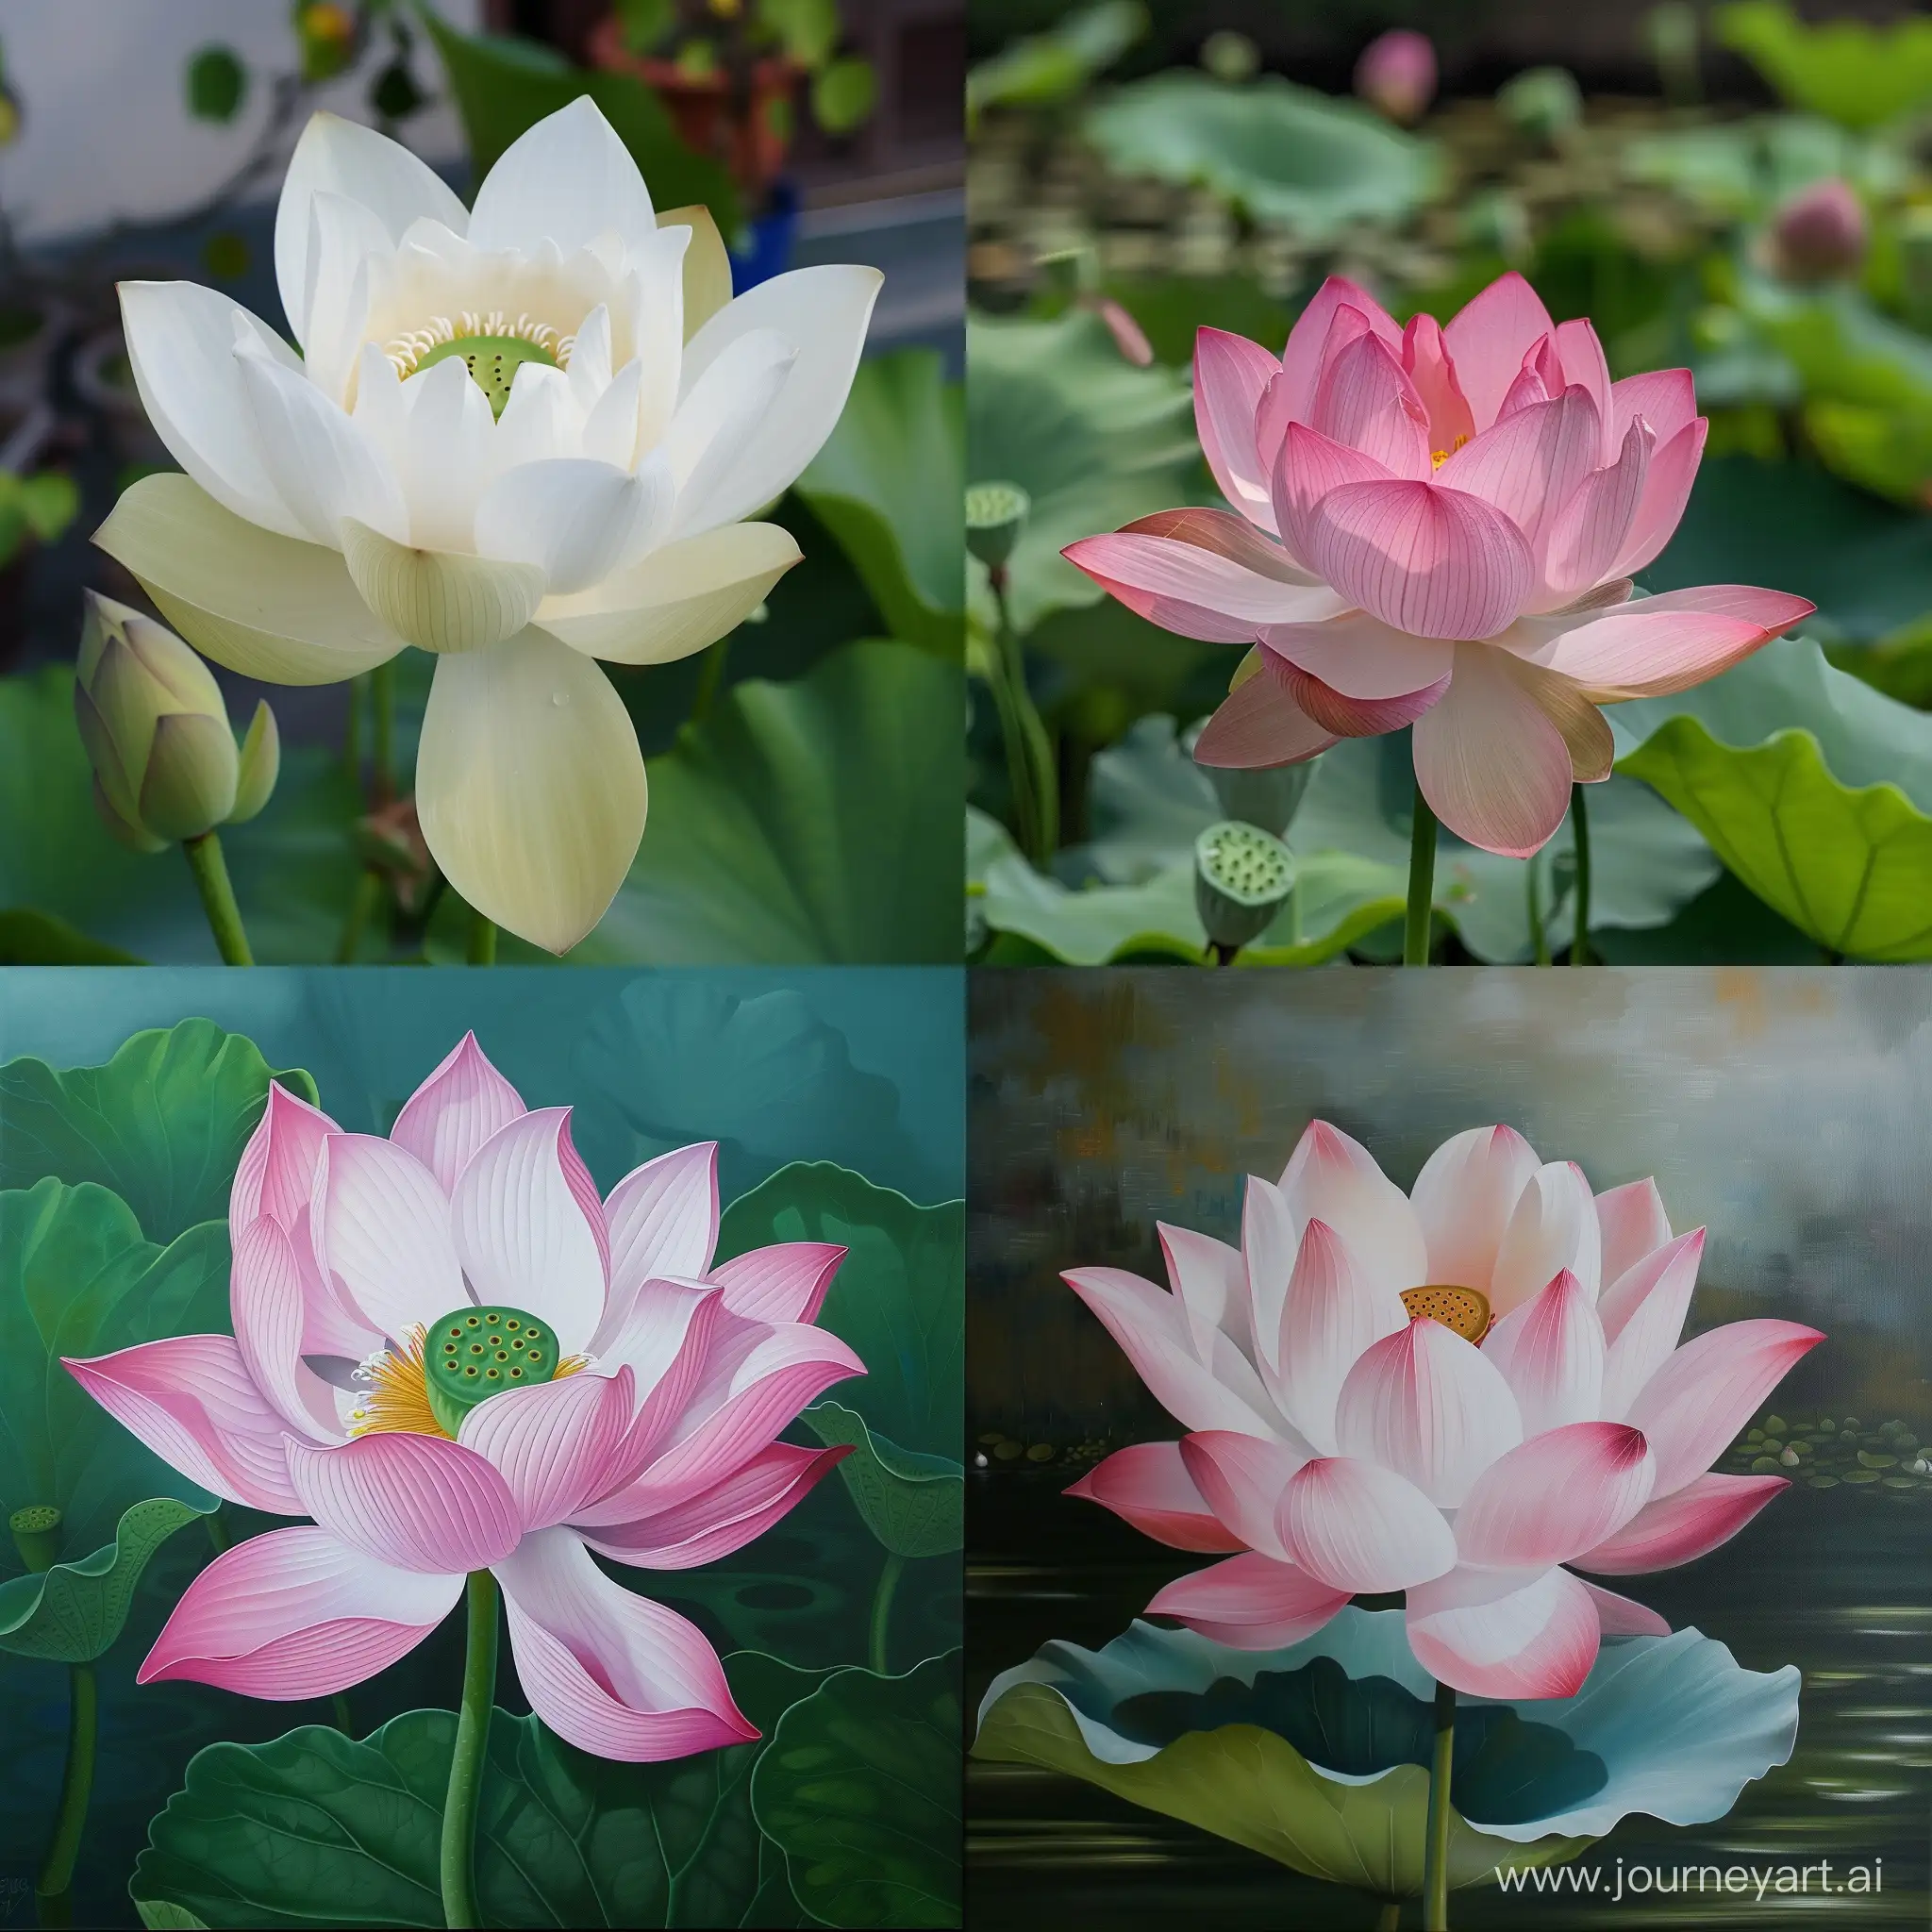 Vibrant-Lotus-Flower-Blooming-in-Serene-Water